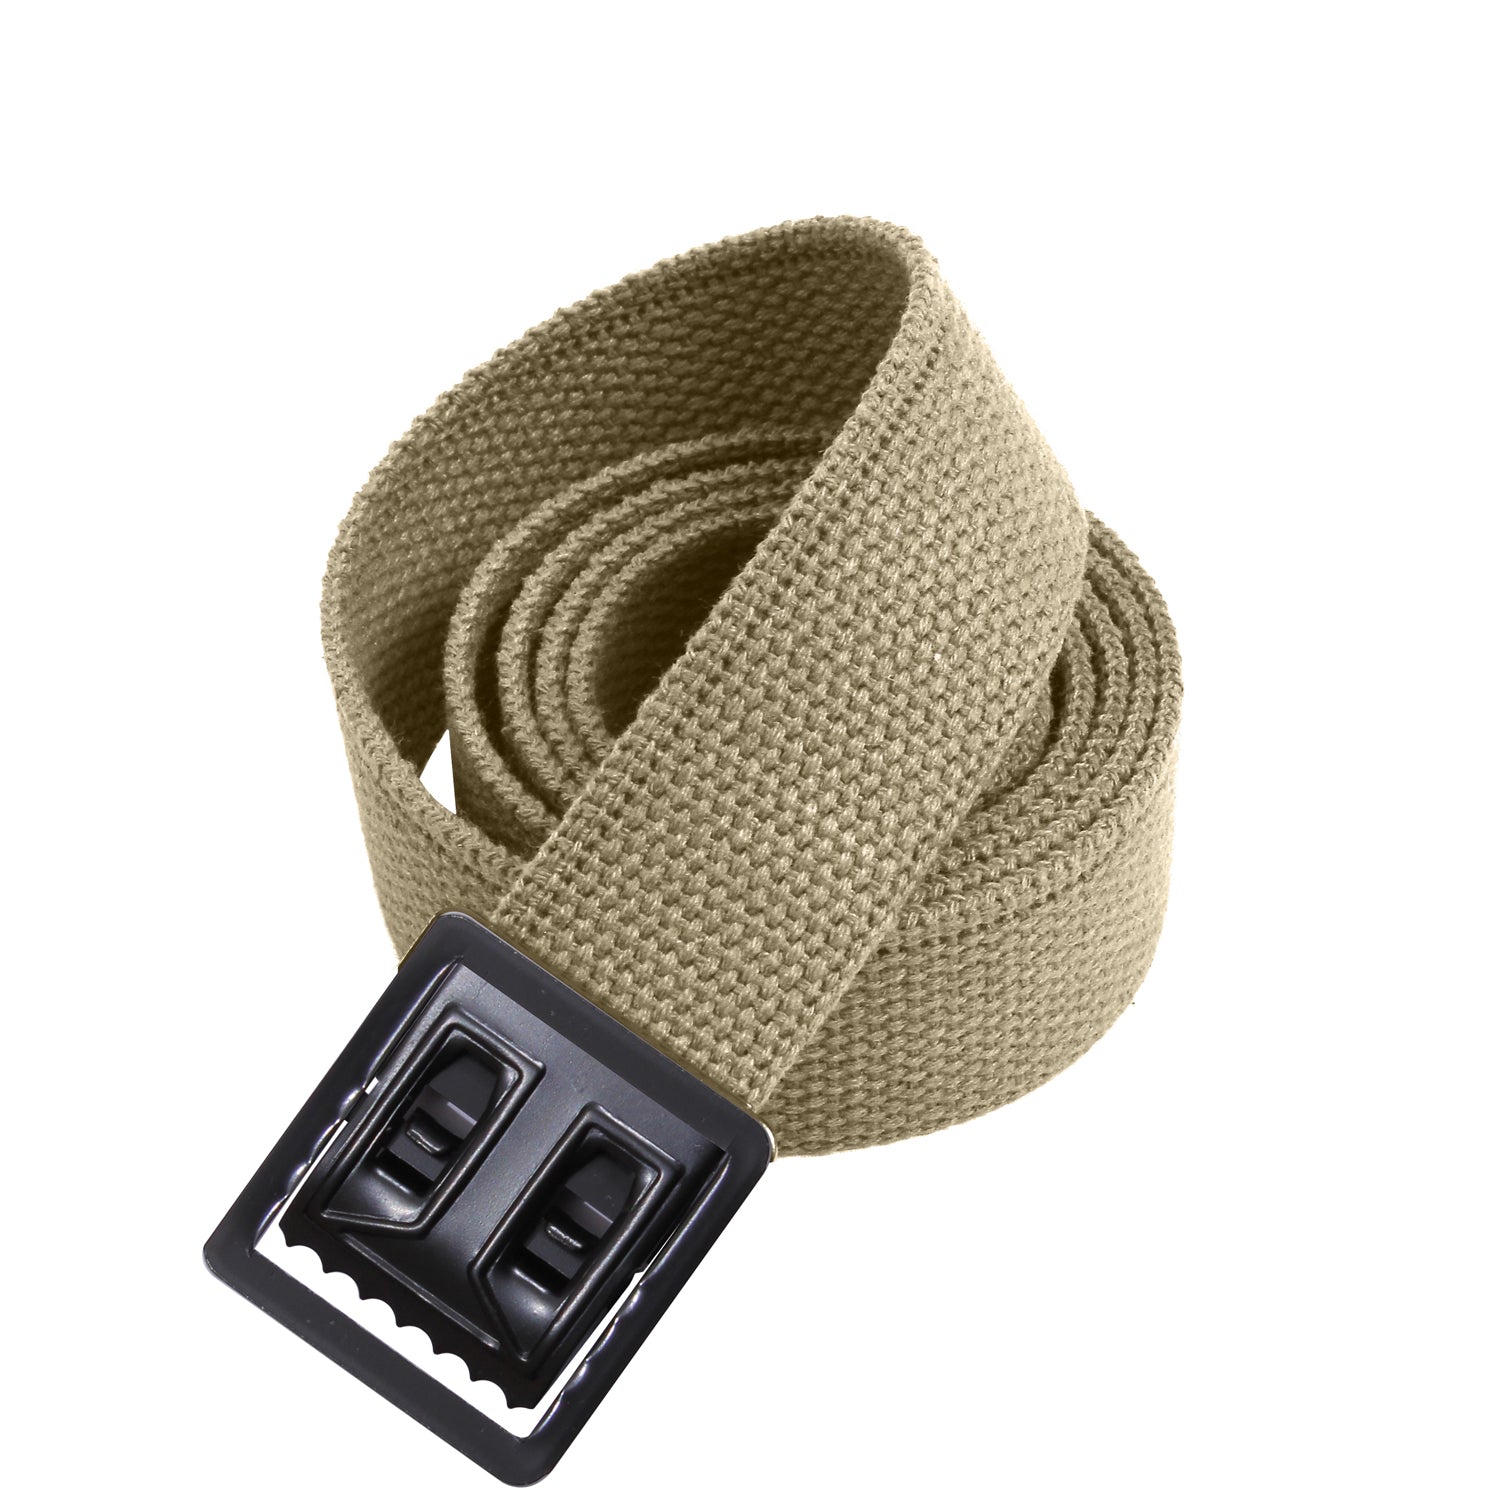 Belt 1.25 Web Black or Olive Drab Belt & Buckle